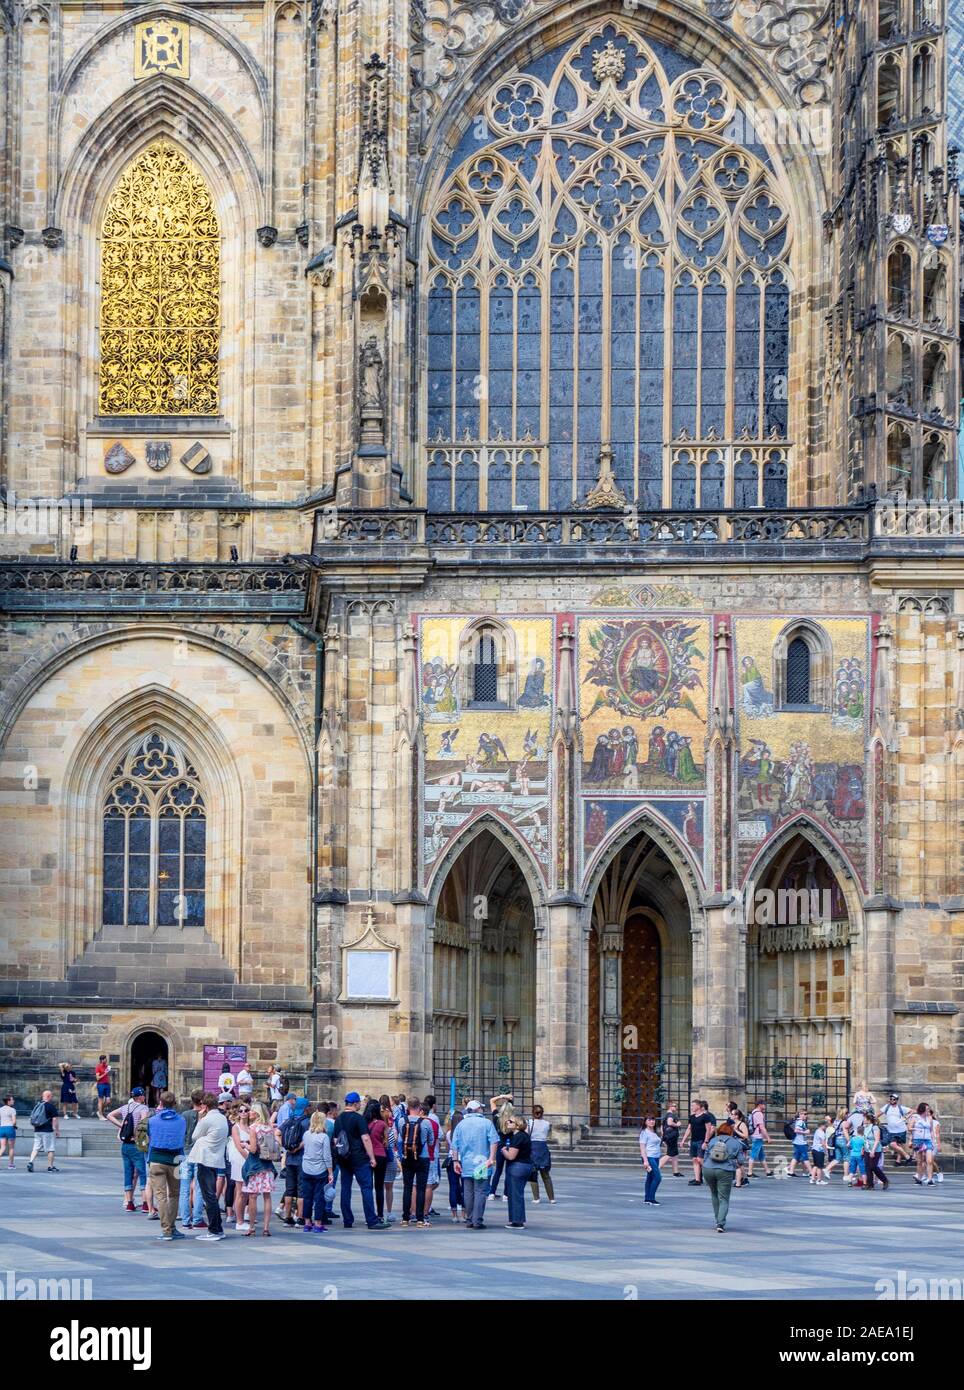 Triptych Mosaic of the Last Judgement above 3 arched portal of Gothic St Vitus Cathedral Prague Castle Complex Prague Czech Republic. Stock Photo